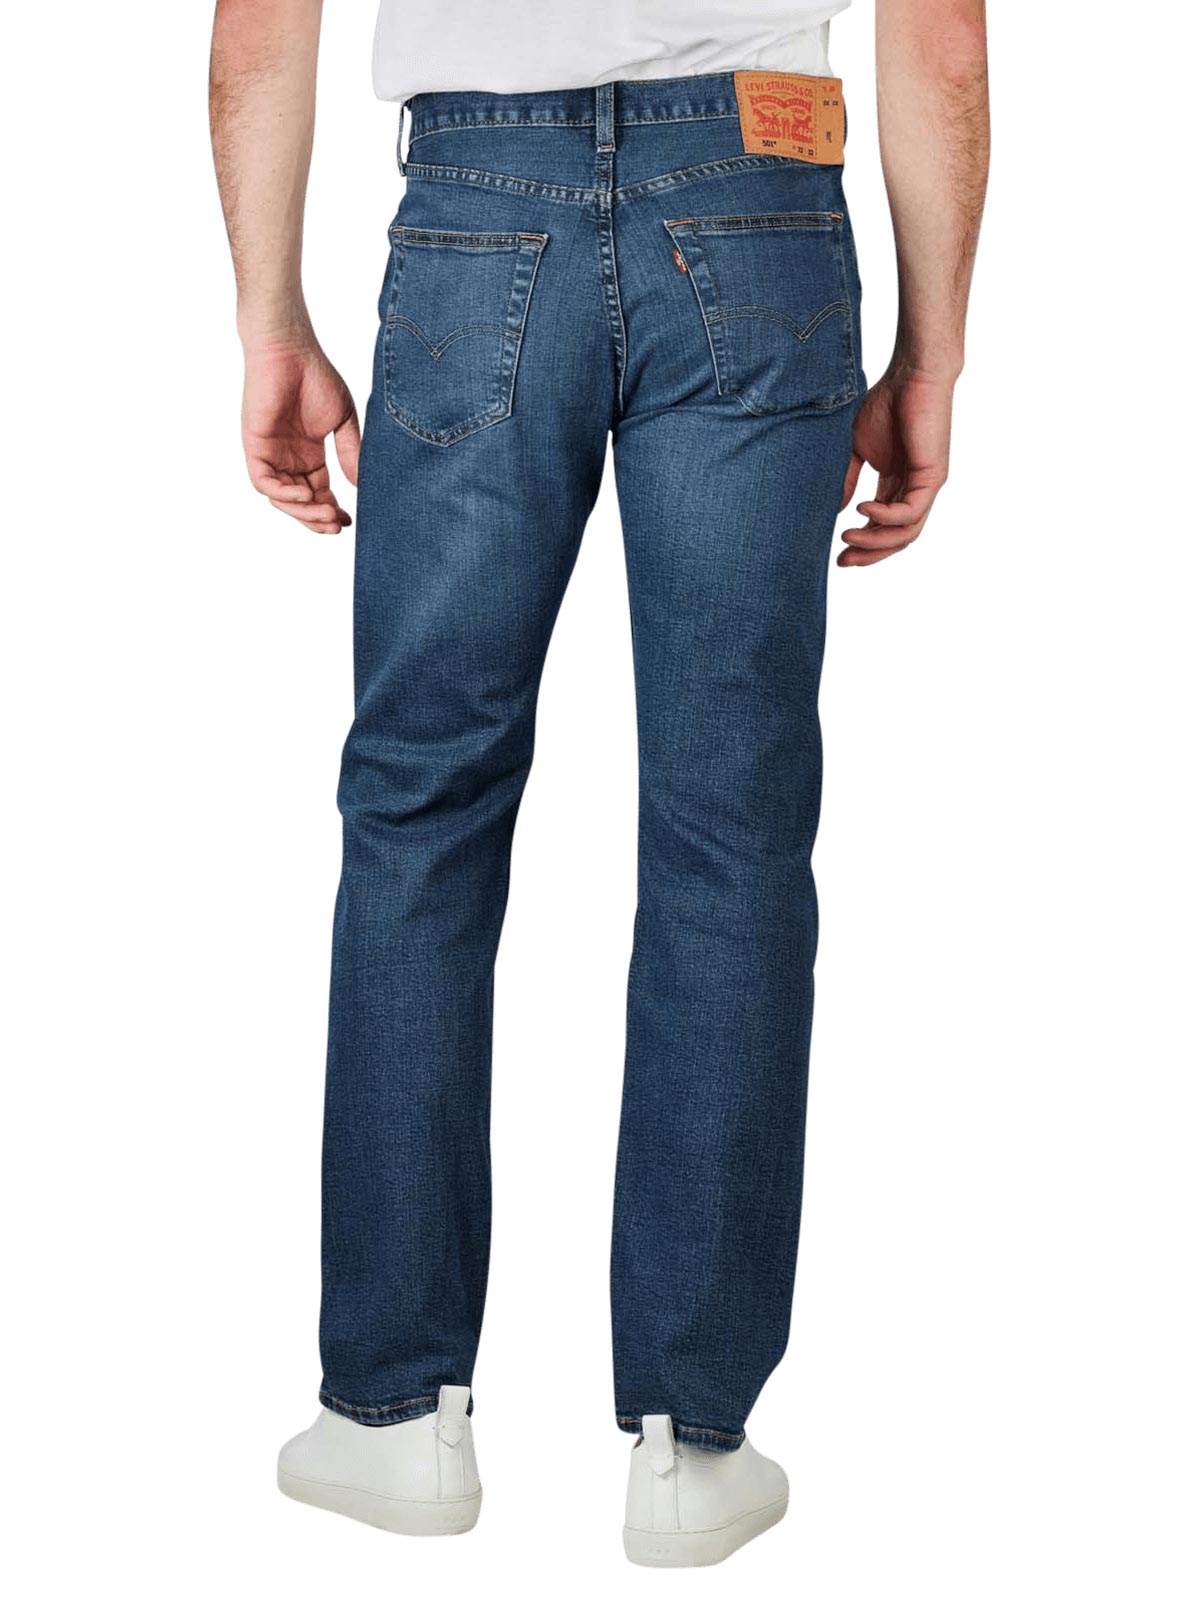 Levi's 501 Jeans Straight Fit Uncanny Levi's Men's Jeans | Free